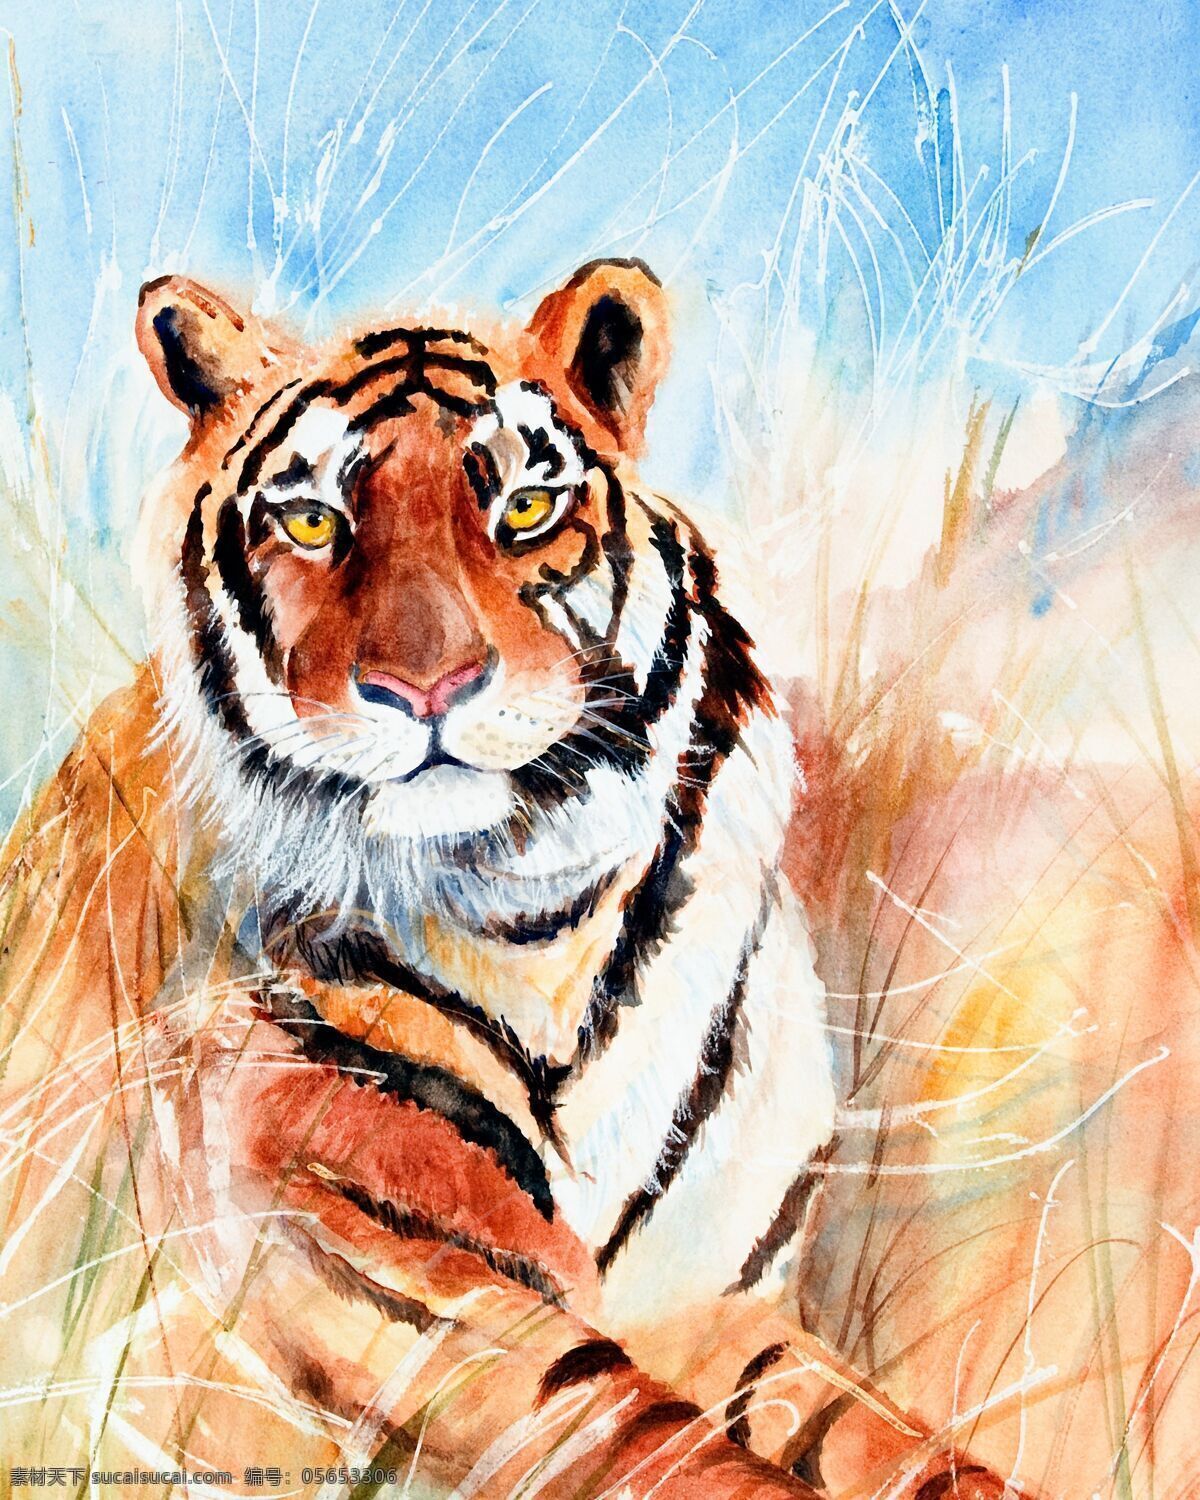 水彩老虎漫画 水彩动物插画 老虎插画 绘画艺术 水彩画 陆地动物 生物世界 白色